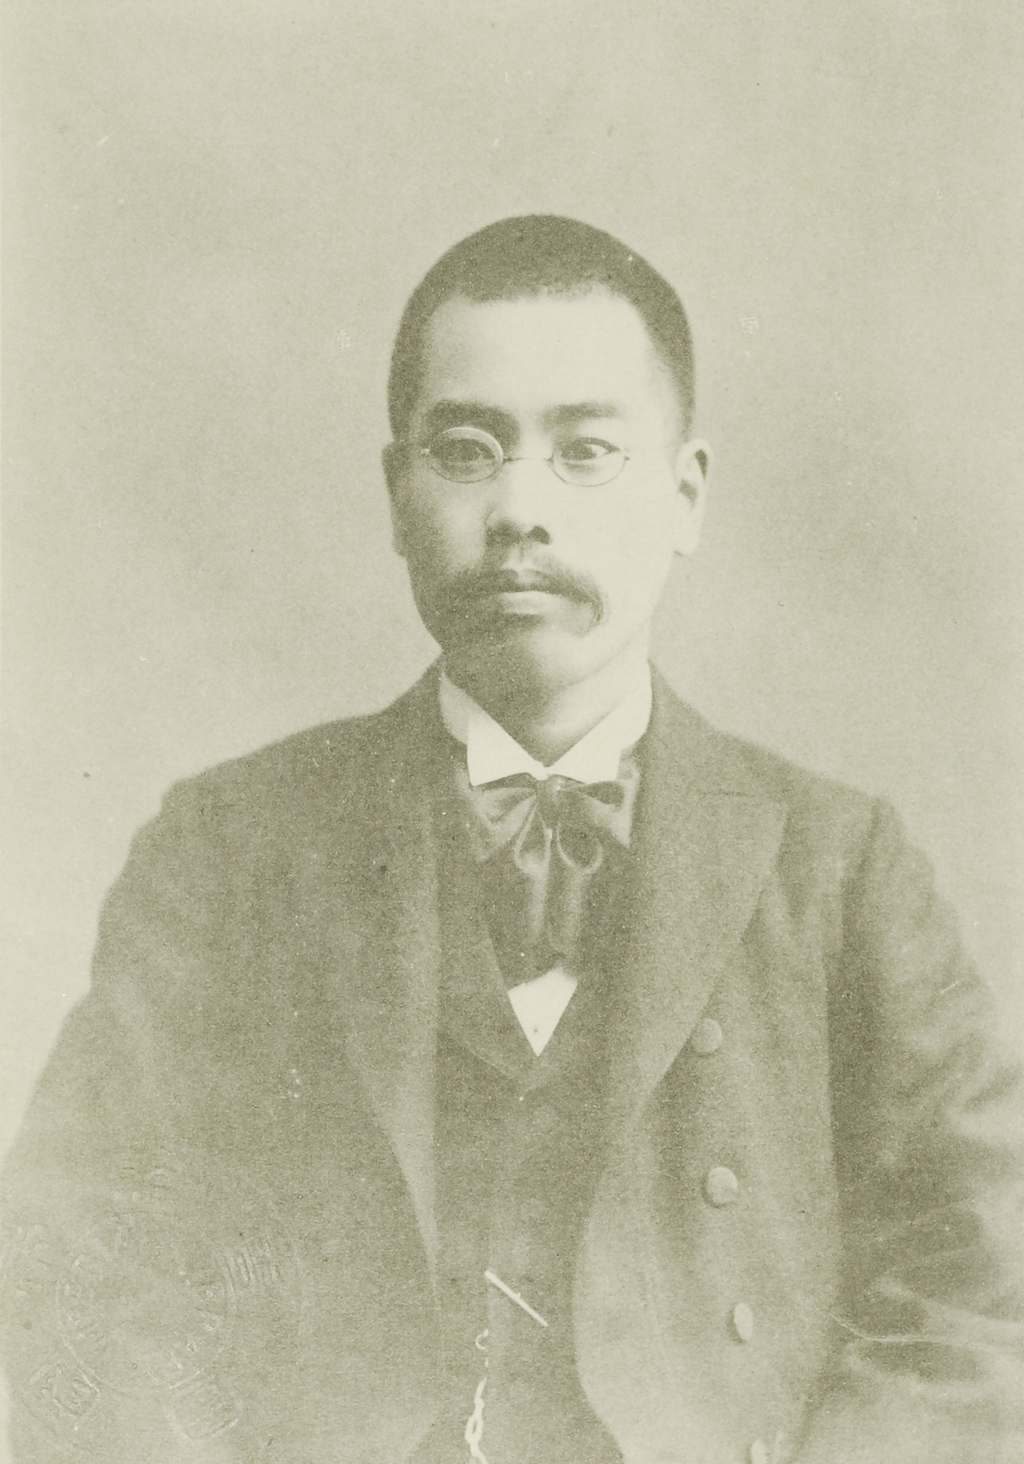 Portrait of YOKOTA Sennosuke1